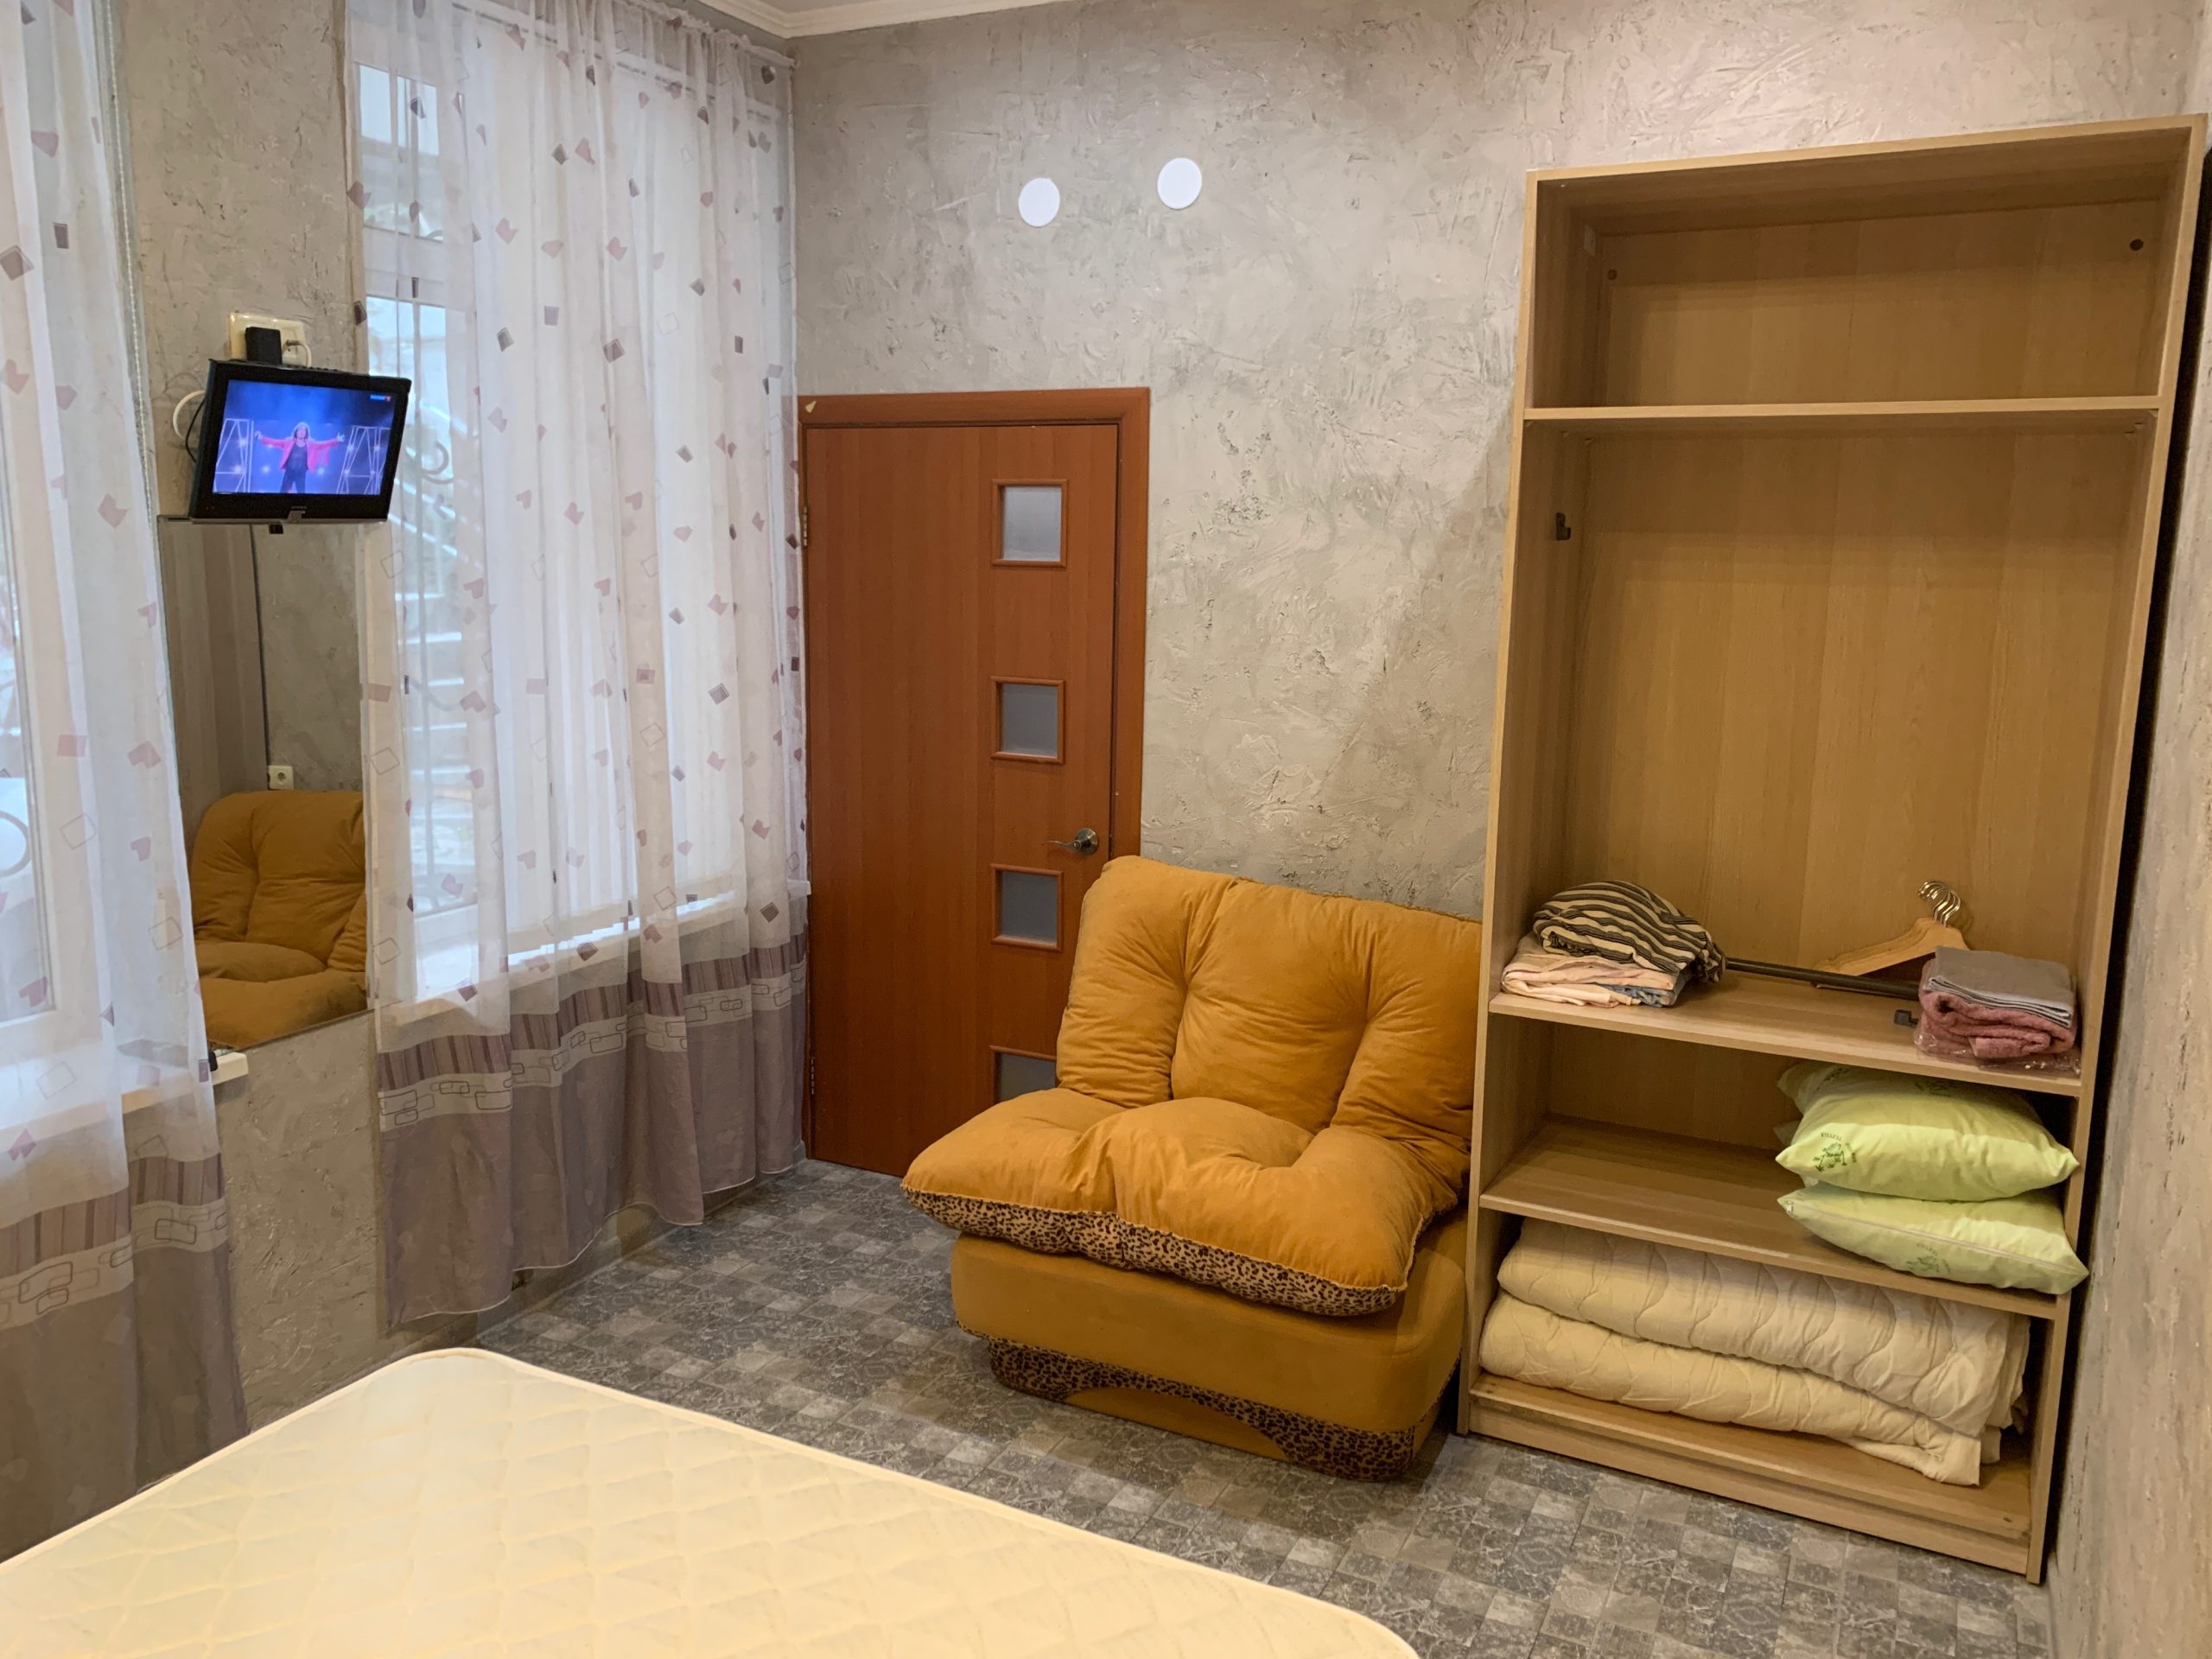 Двухкомнатная квартира на Кирова, 10 (35кв.м) до 2 гостей